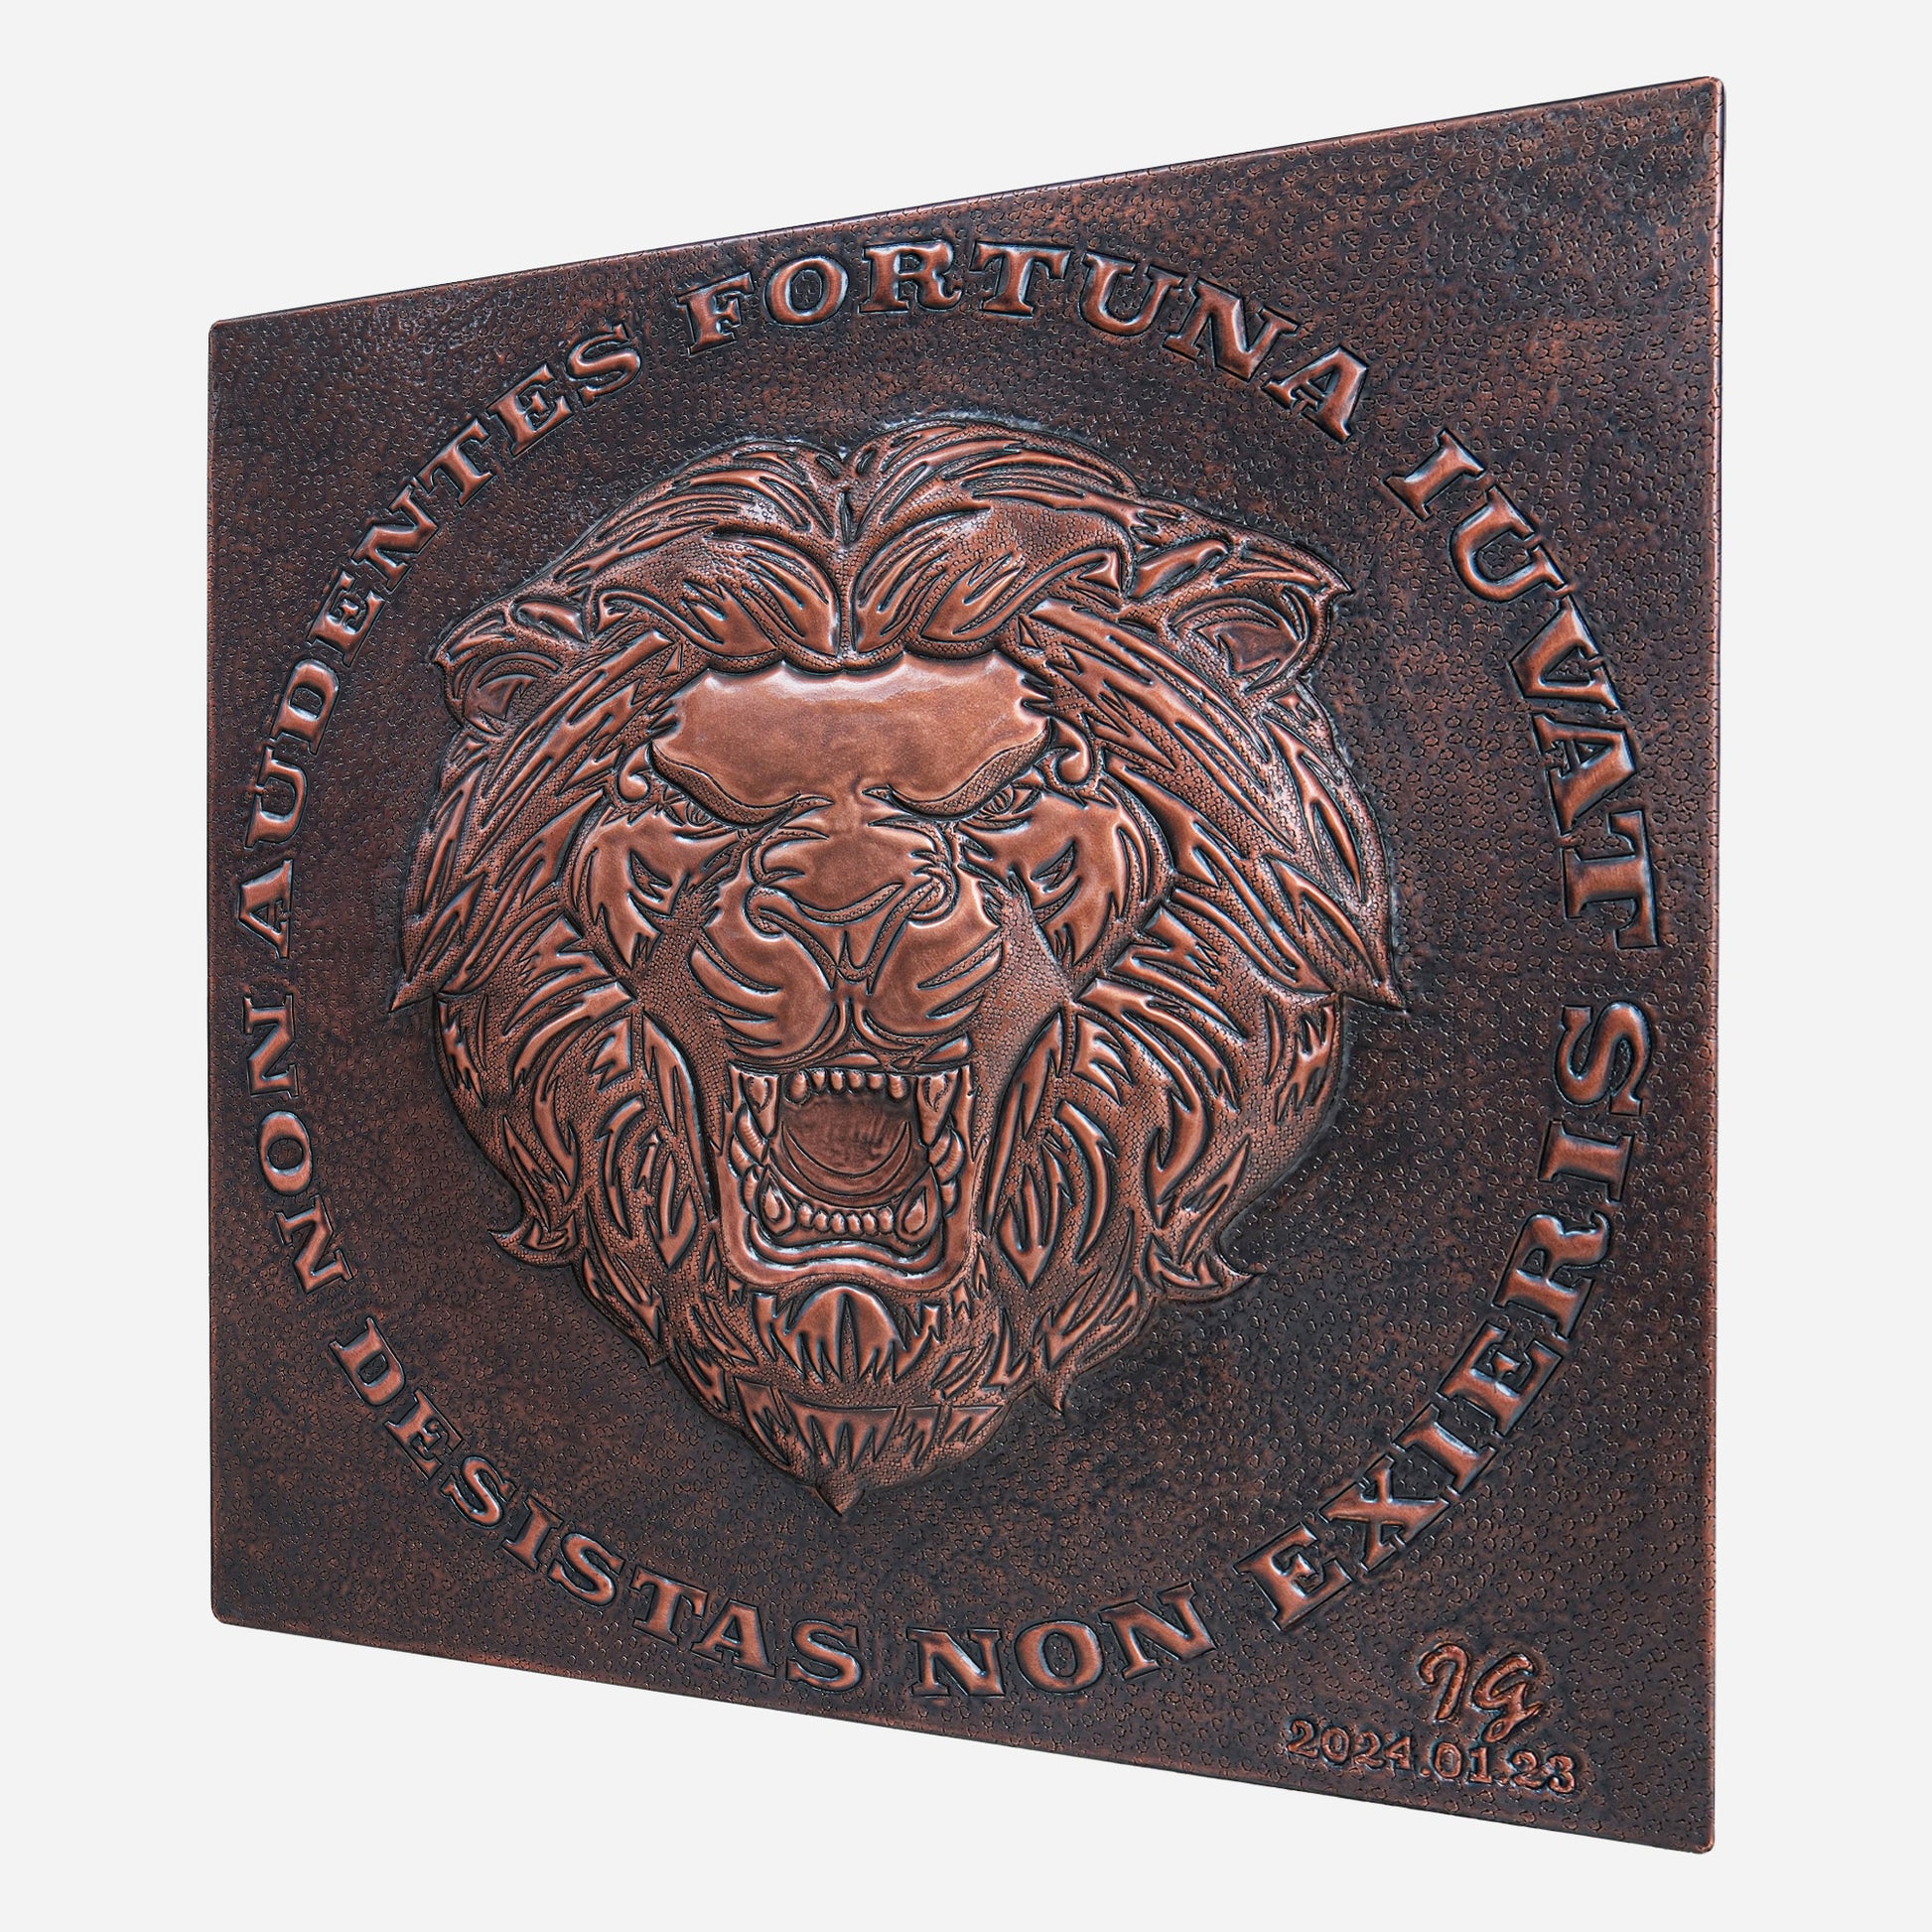 Copper Backsplash( Roaring Lion, "Fortuna Audaces Iuvat")